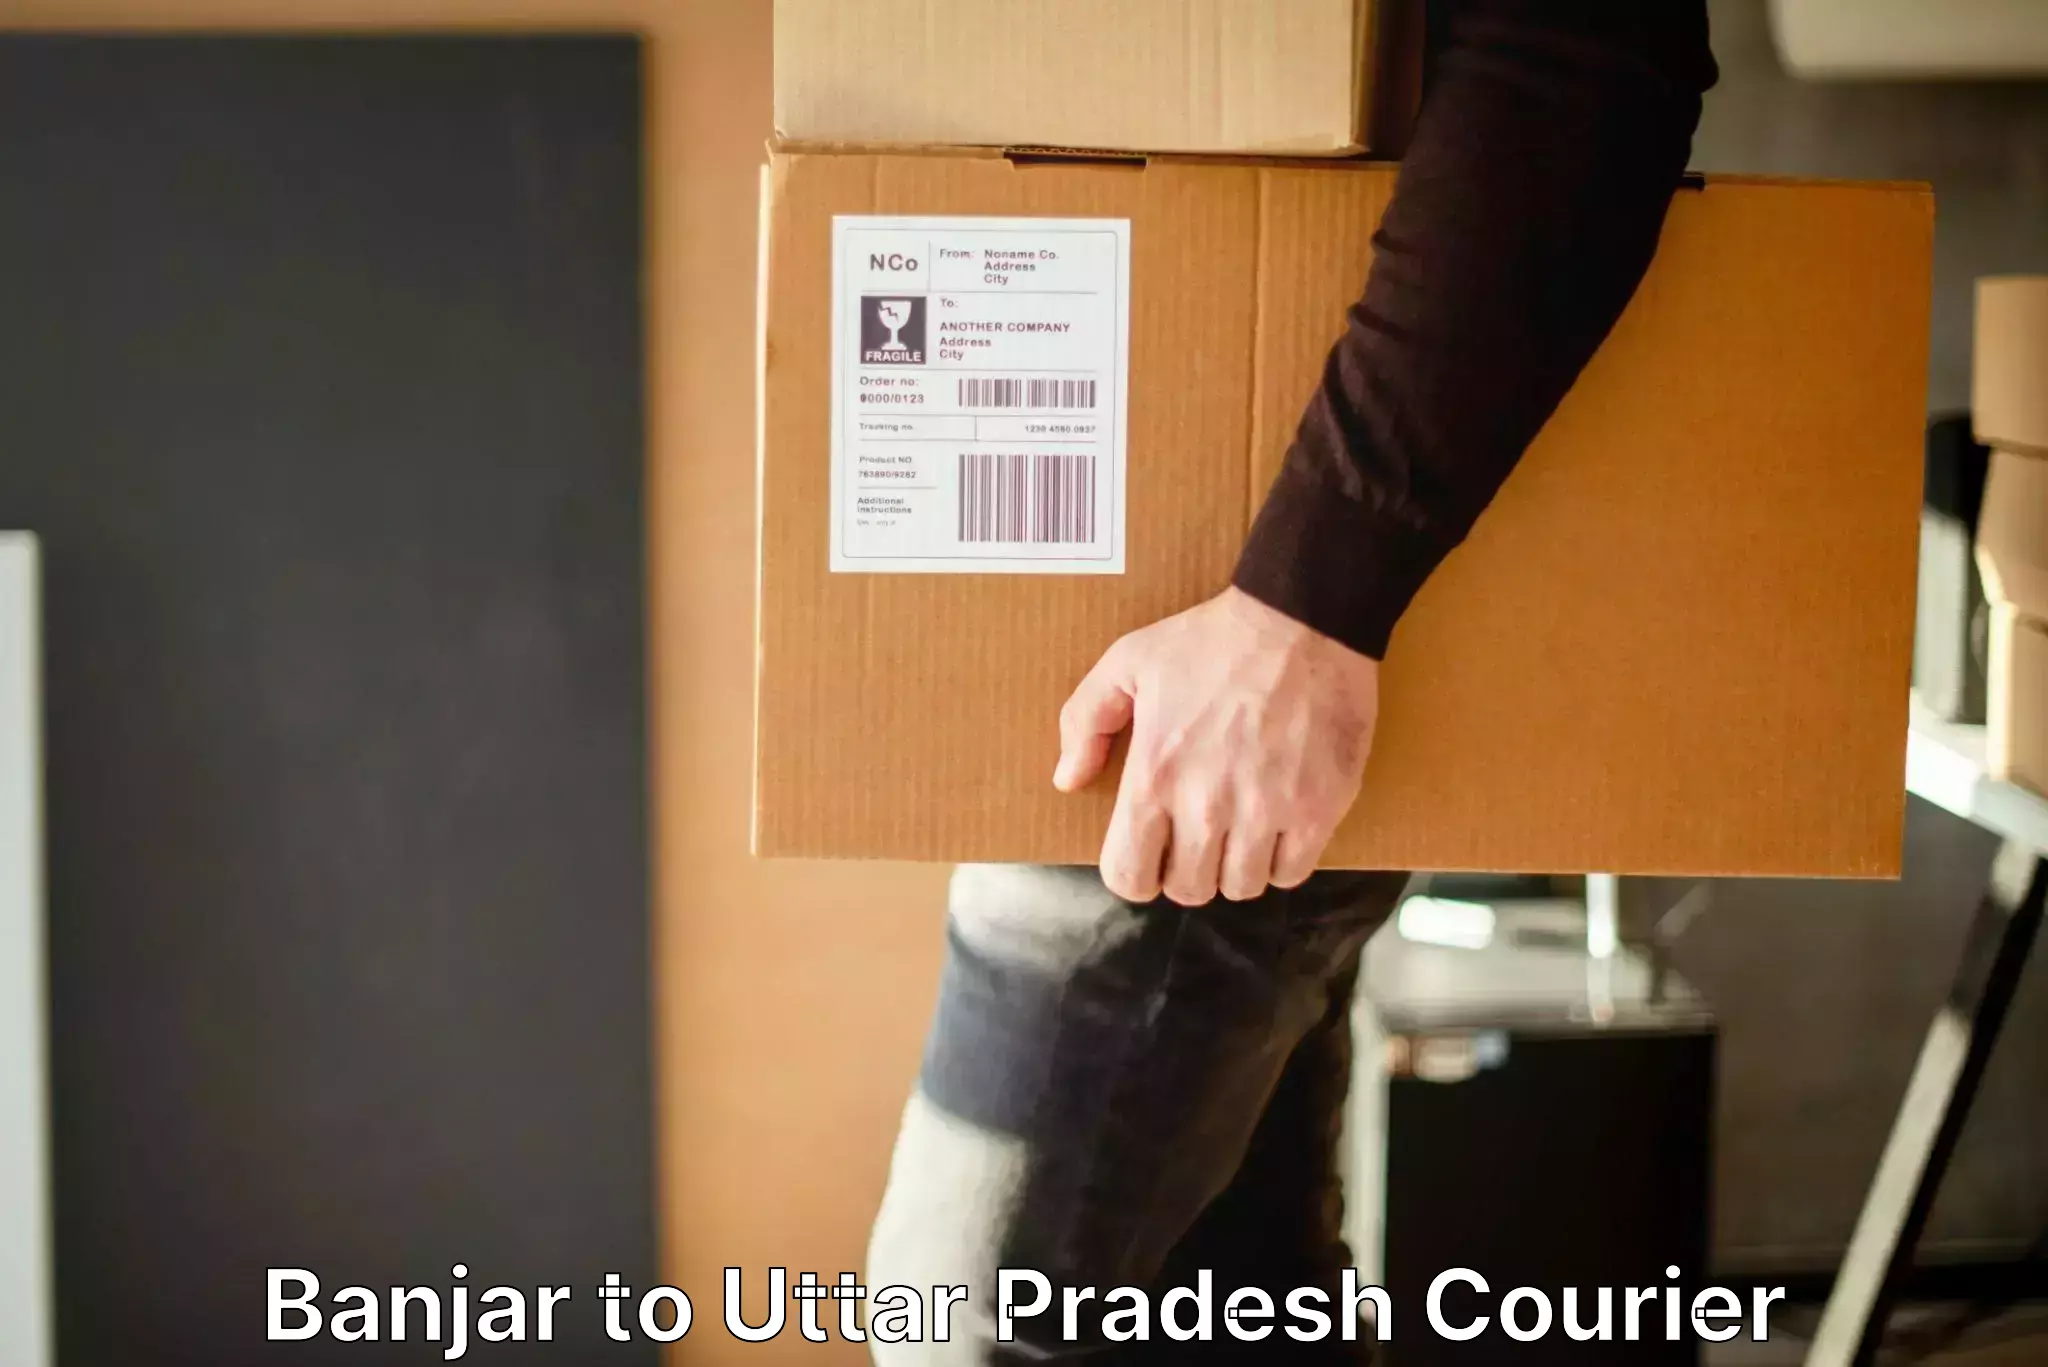 Baggage transport management Banjar to Uttar Pradesh